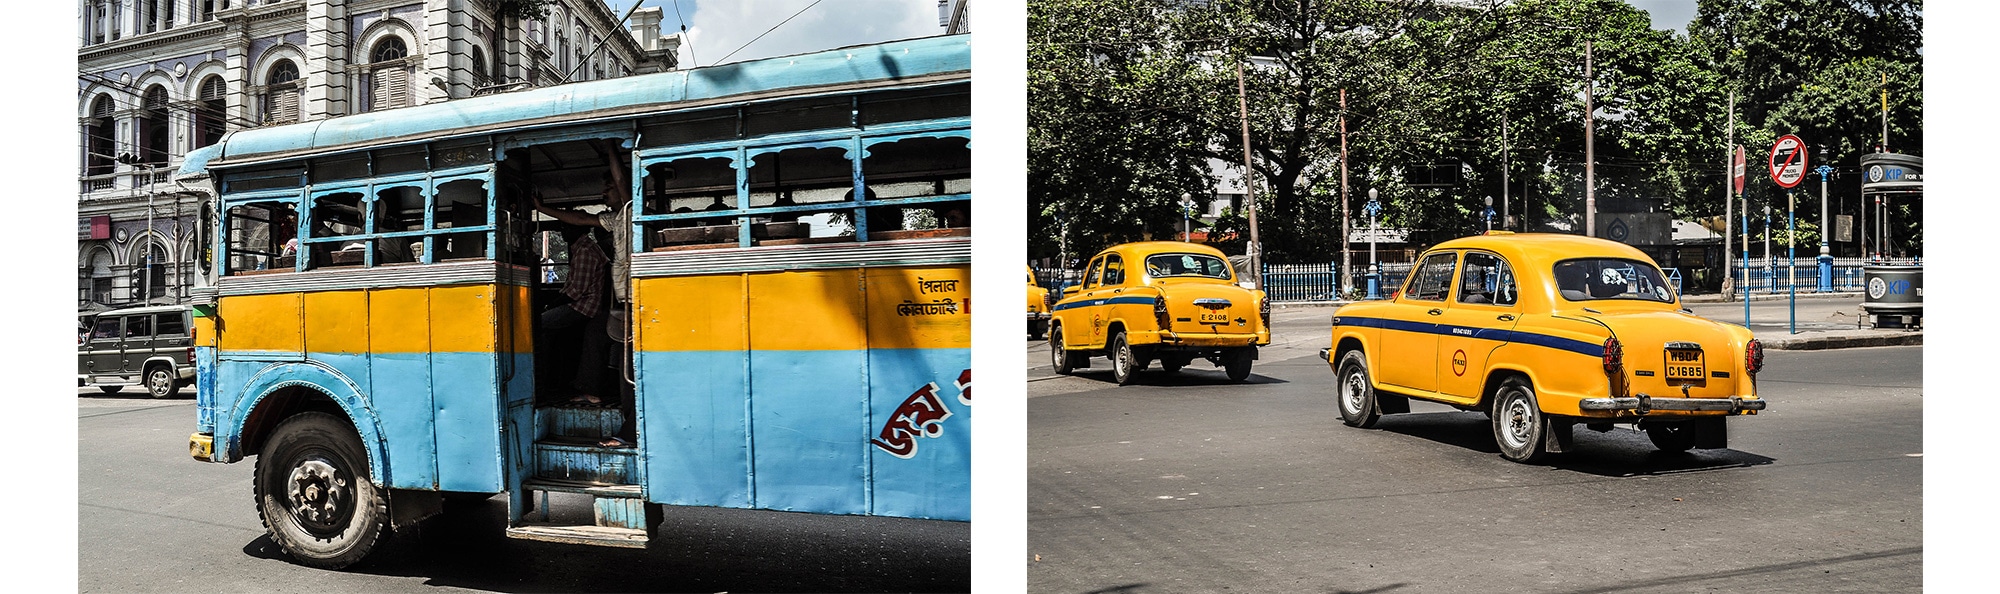 Des bus et taxis à Calcutta en Inde